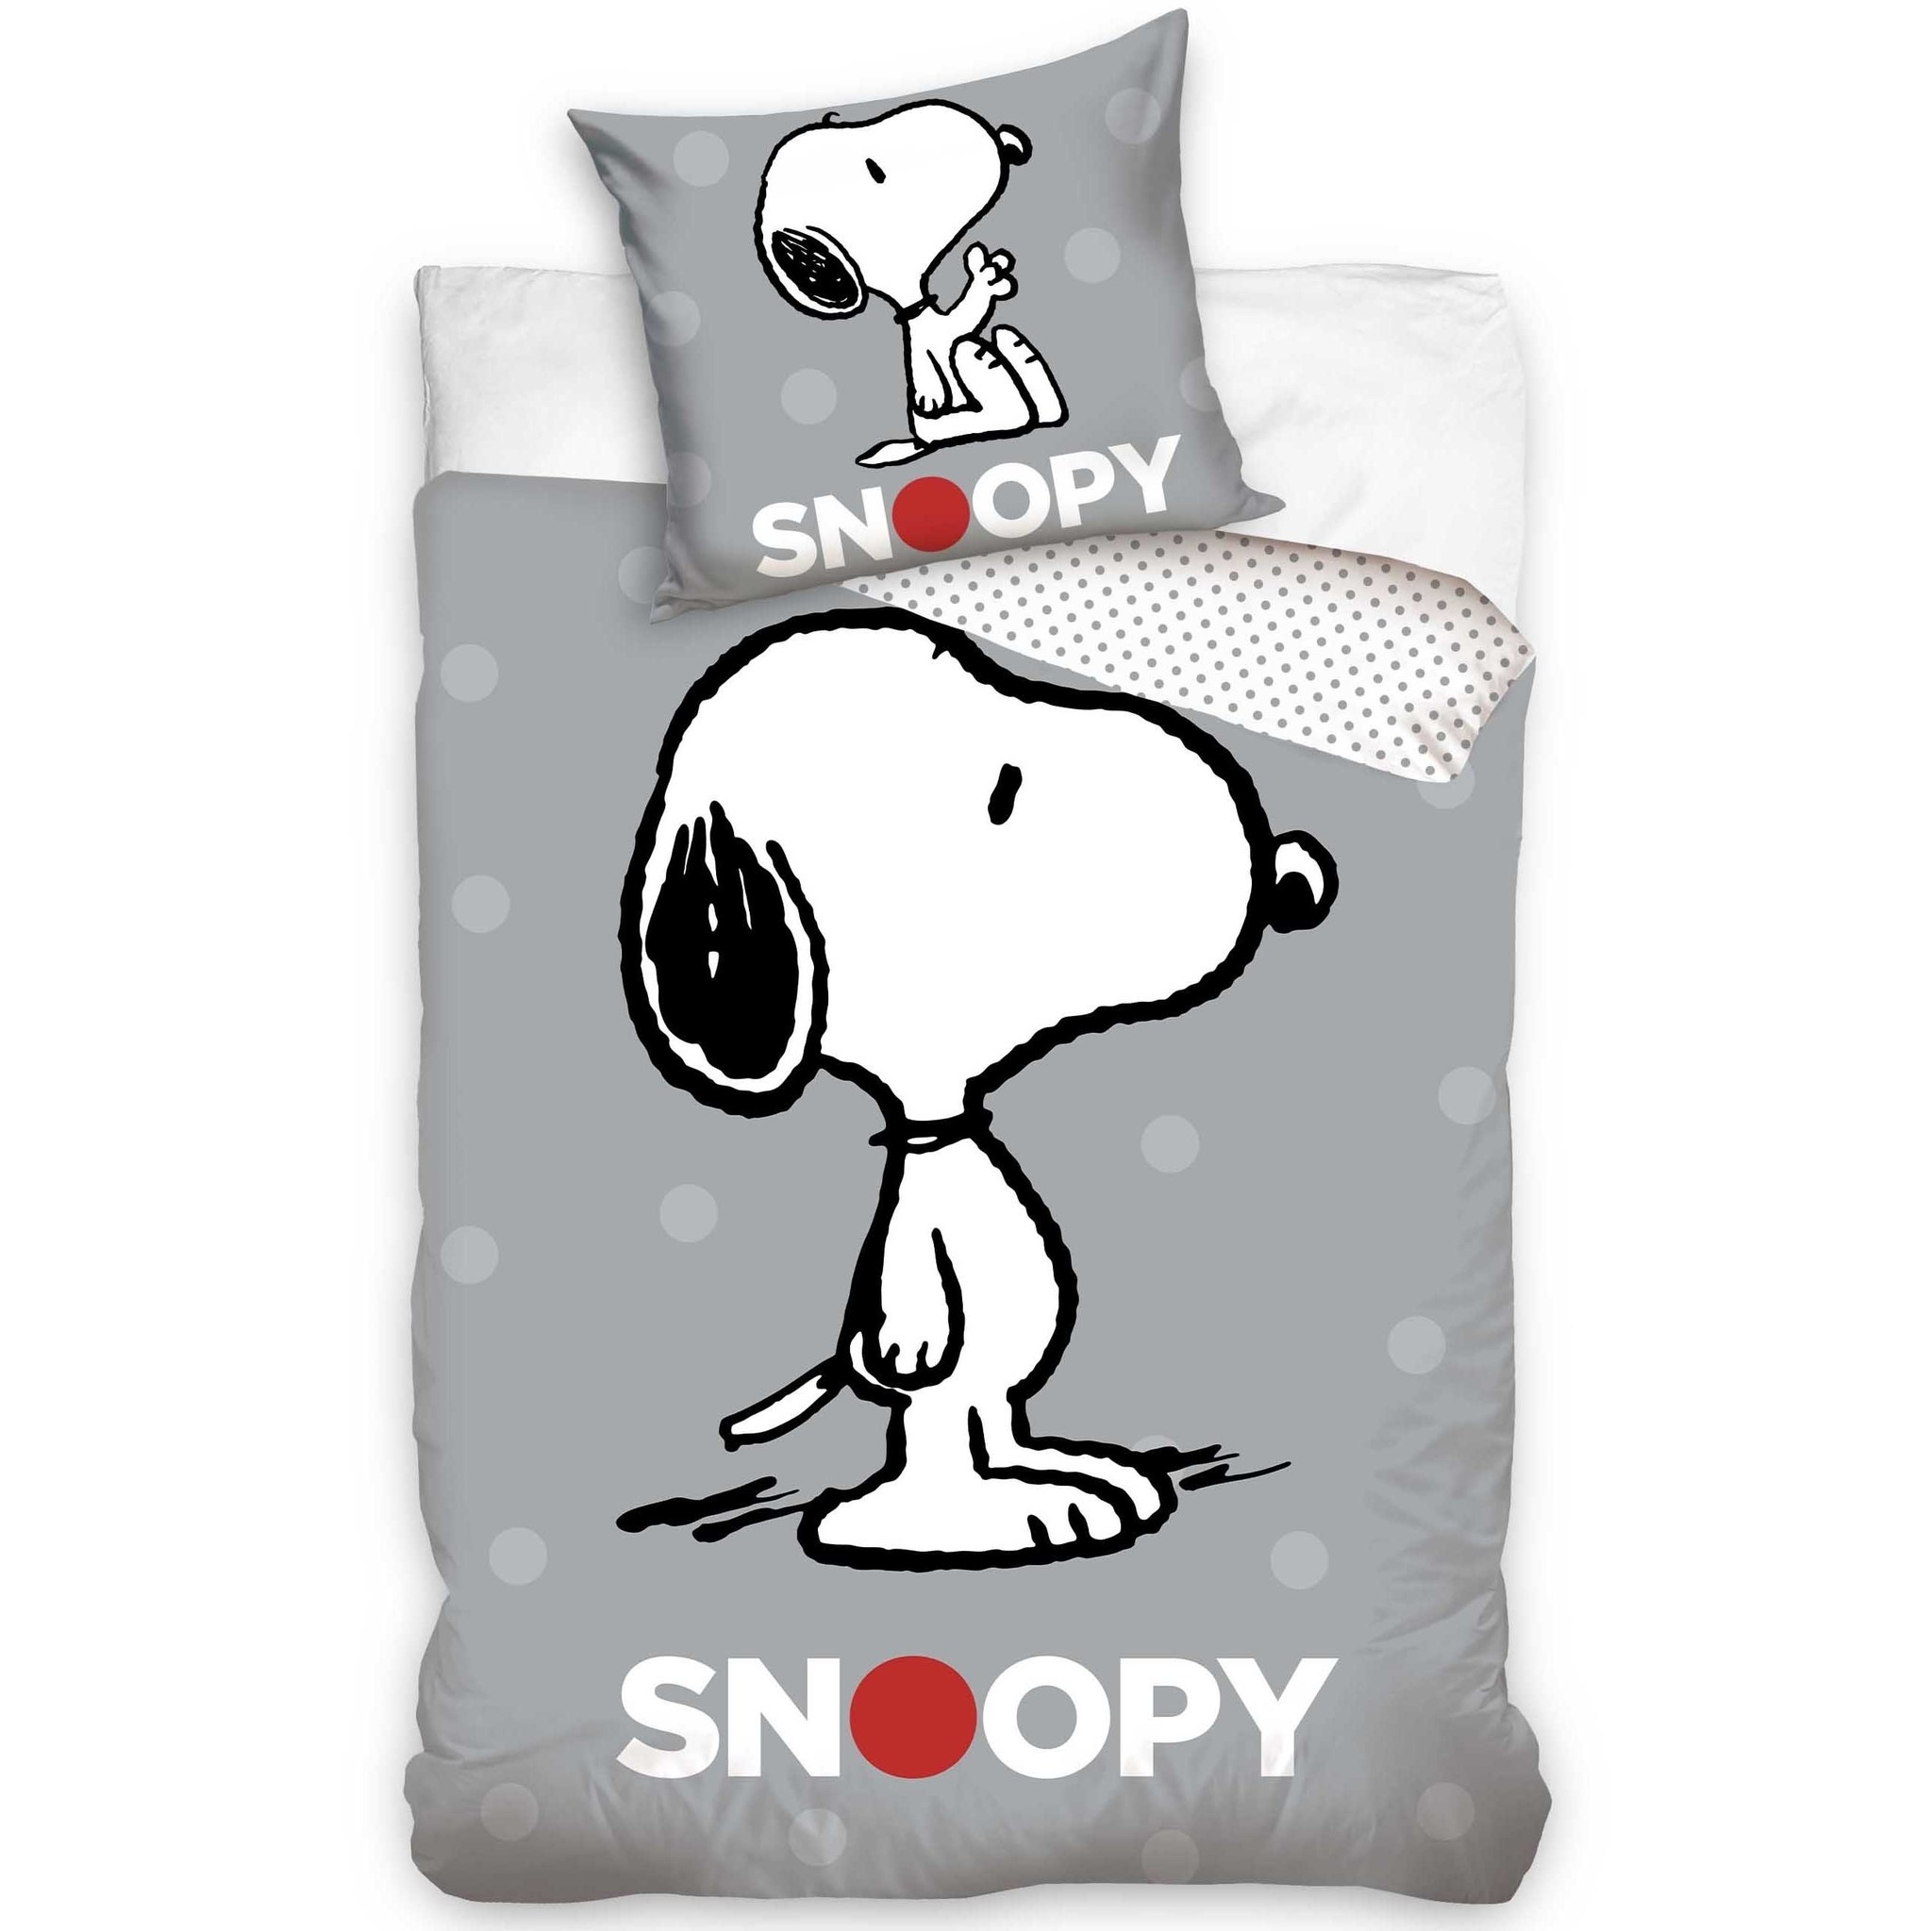 Snoopy dekbedovertrek 140 x 200 cm - 60 x 70 cm - Katoen